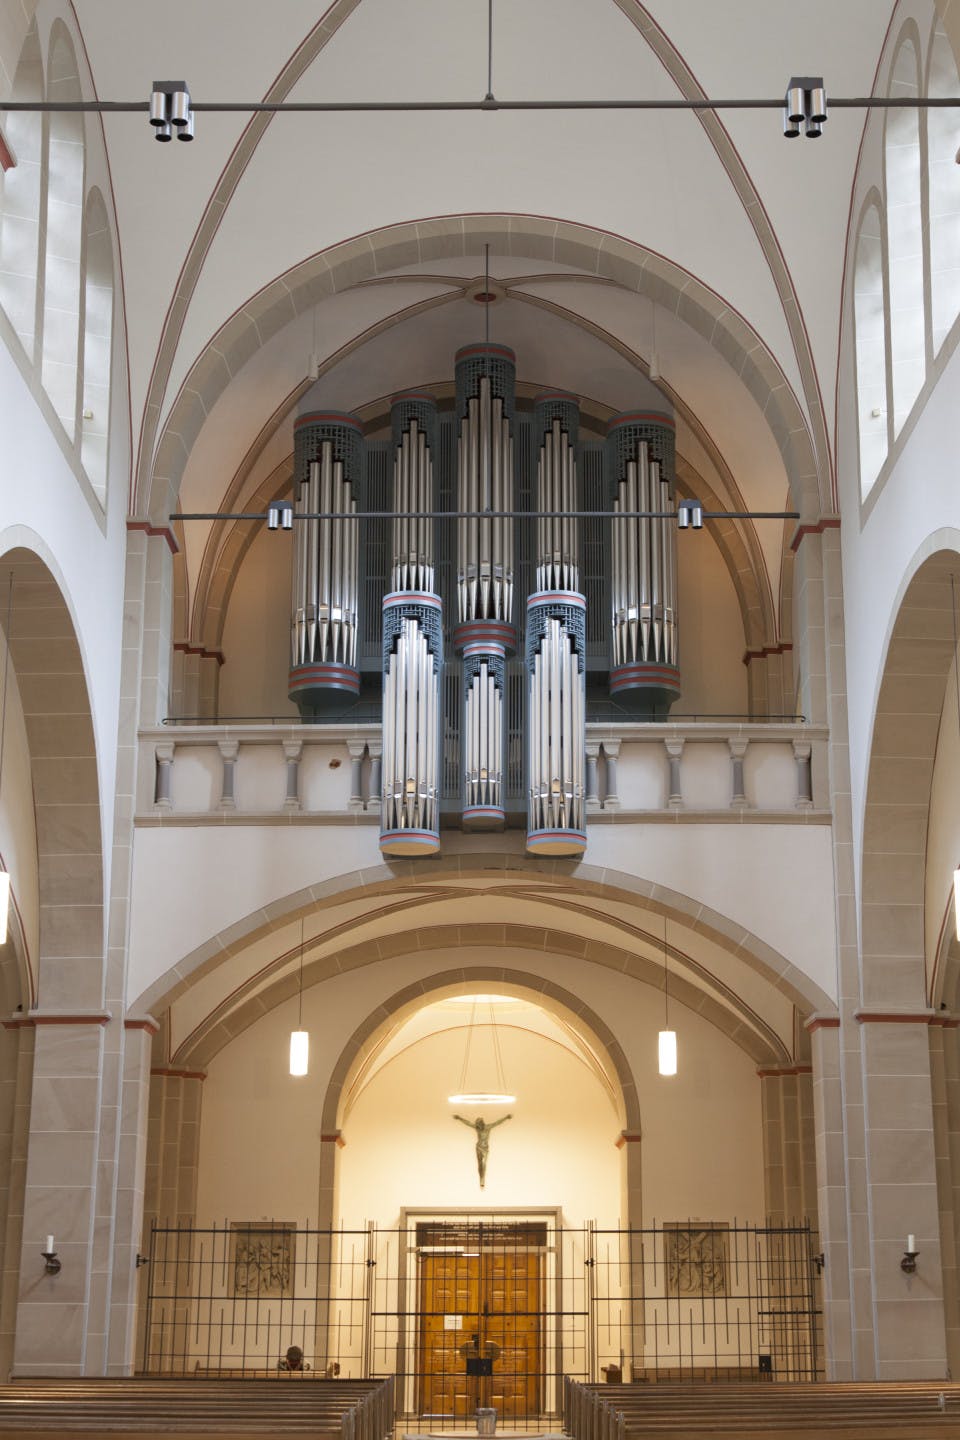 Church organs